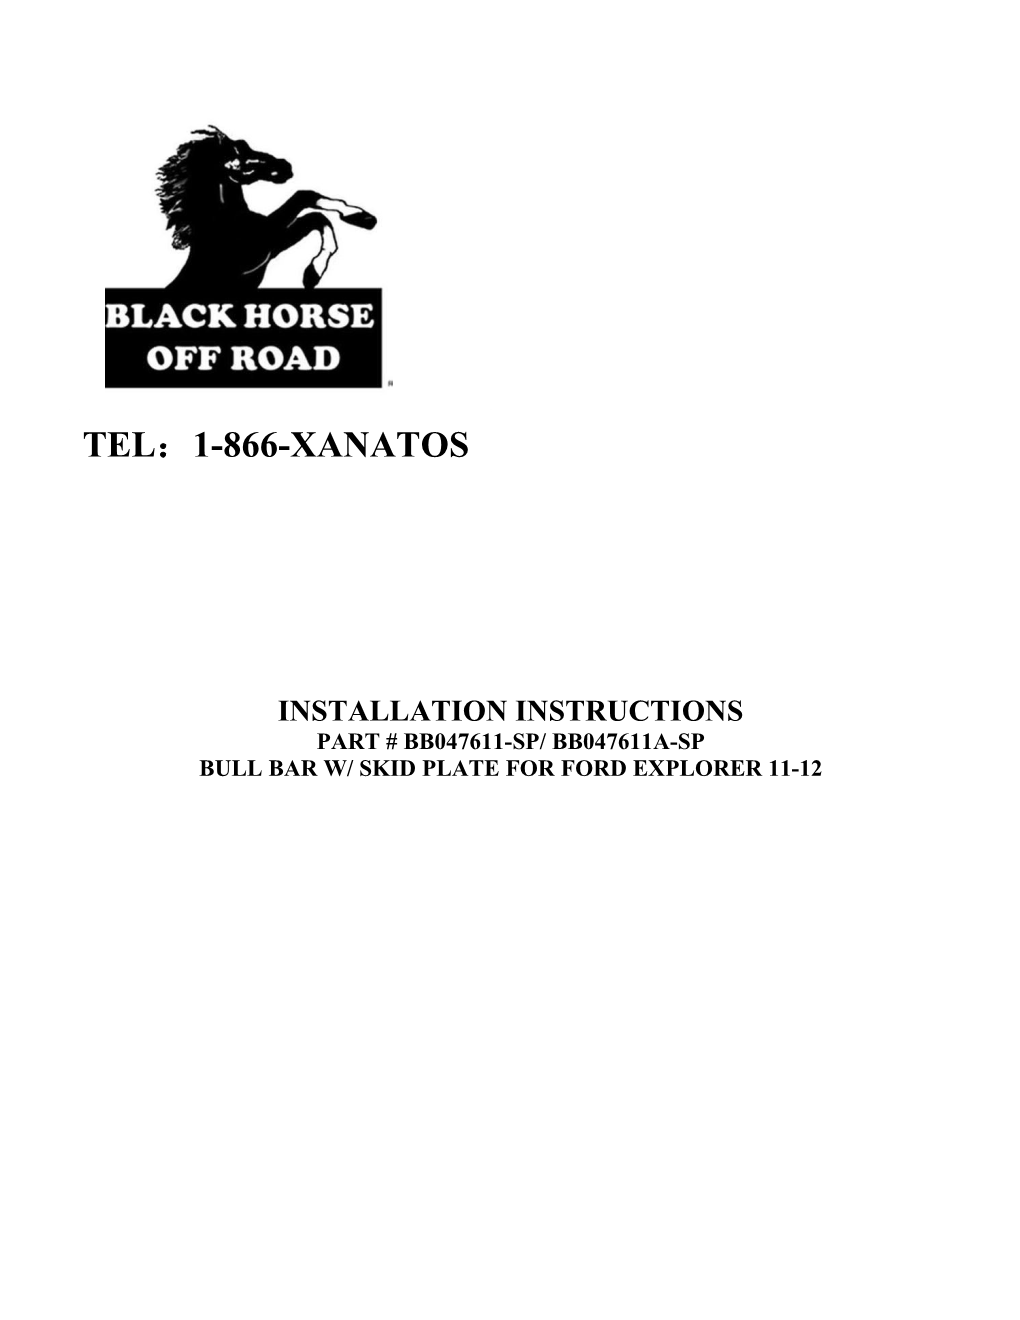 Bull Bar W/ Skid Plate for Ford Explorer11-12